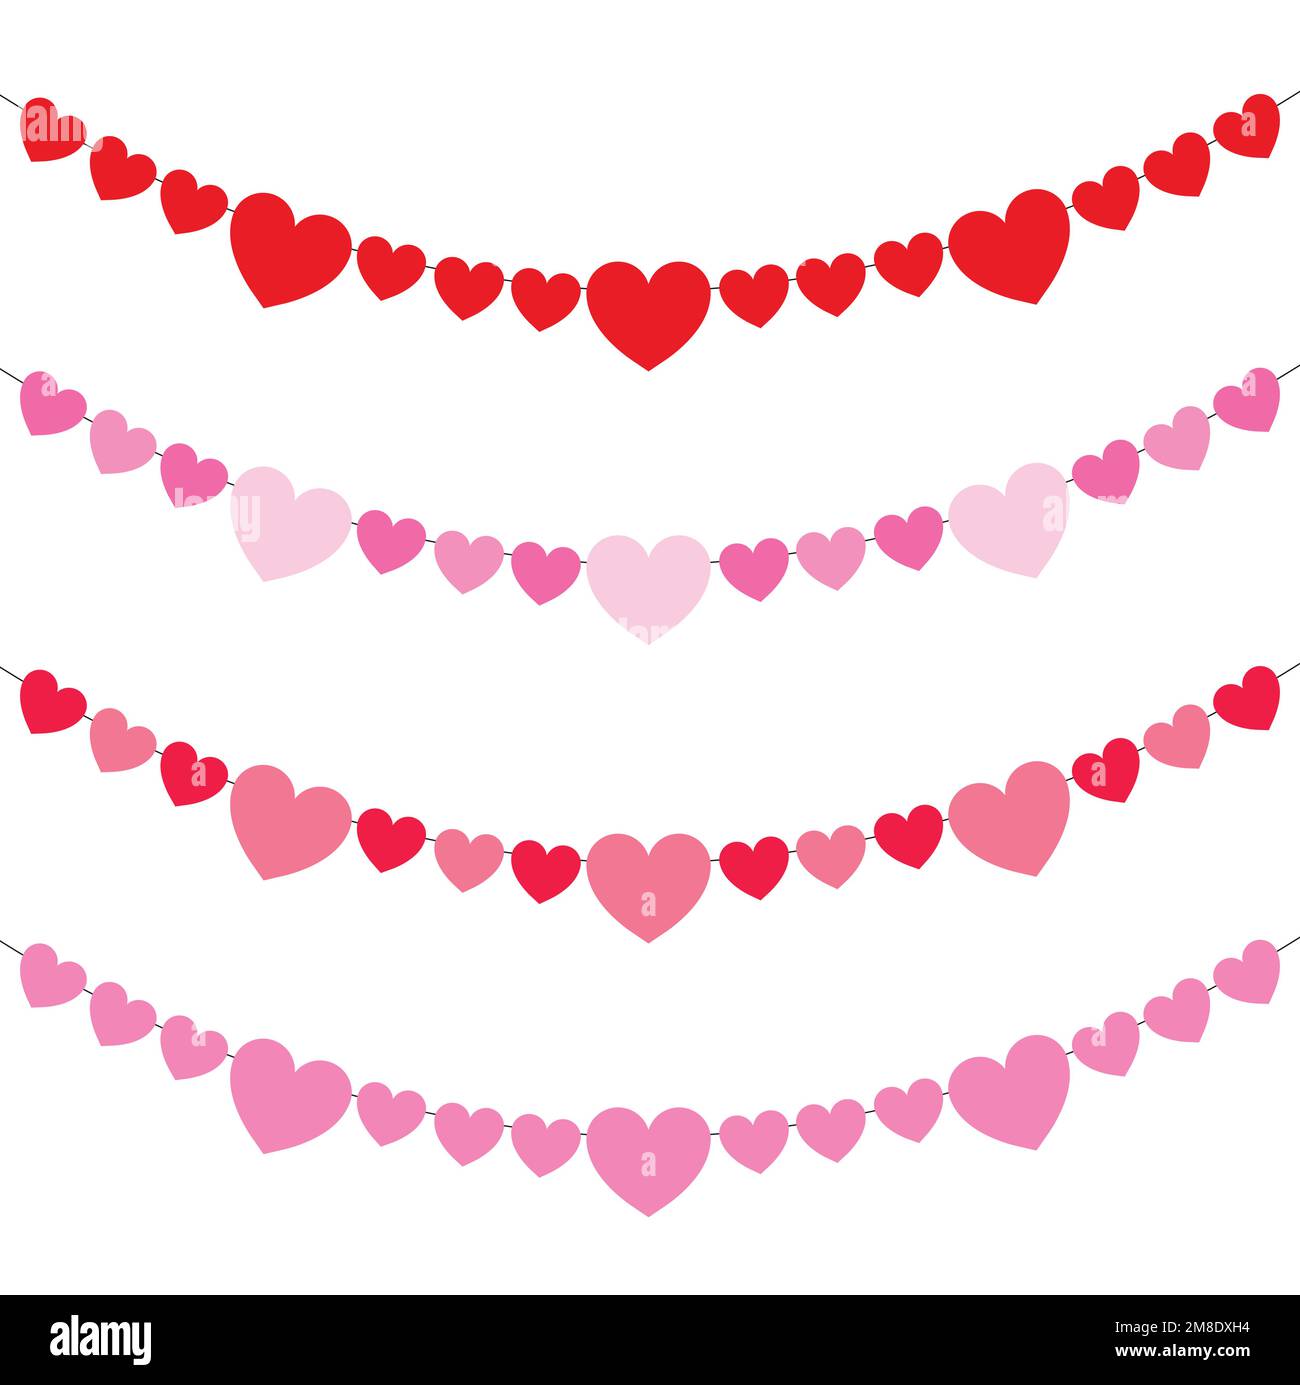 Printable Colorful Heart Confetti Page Border